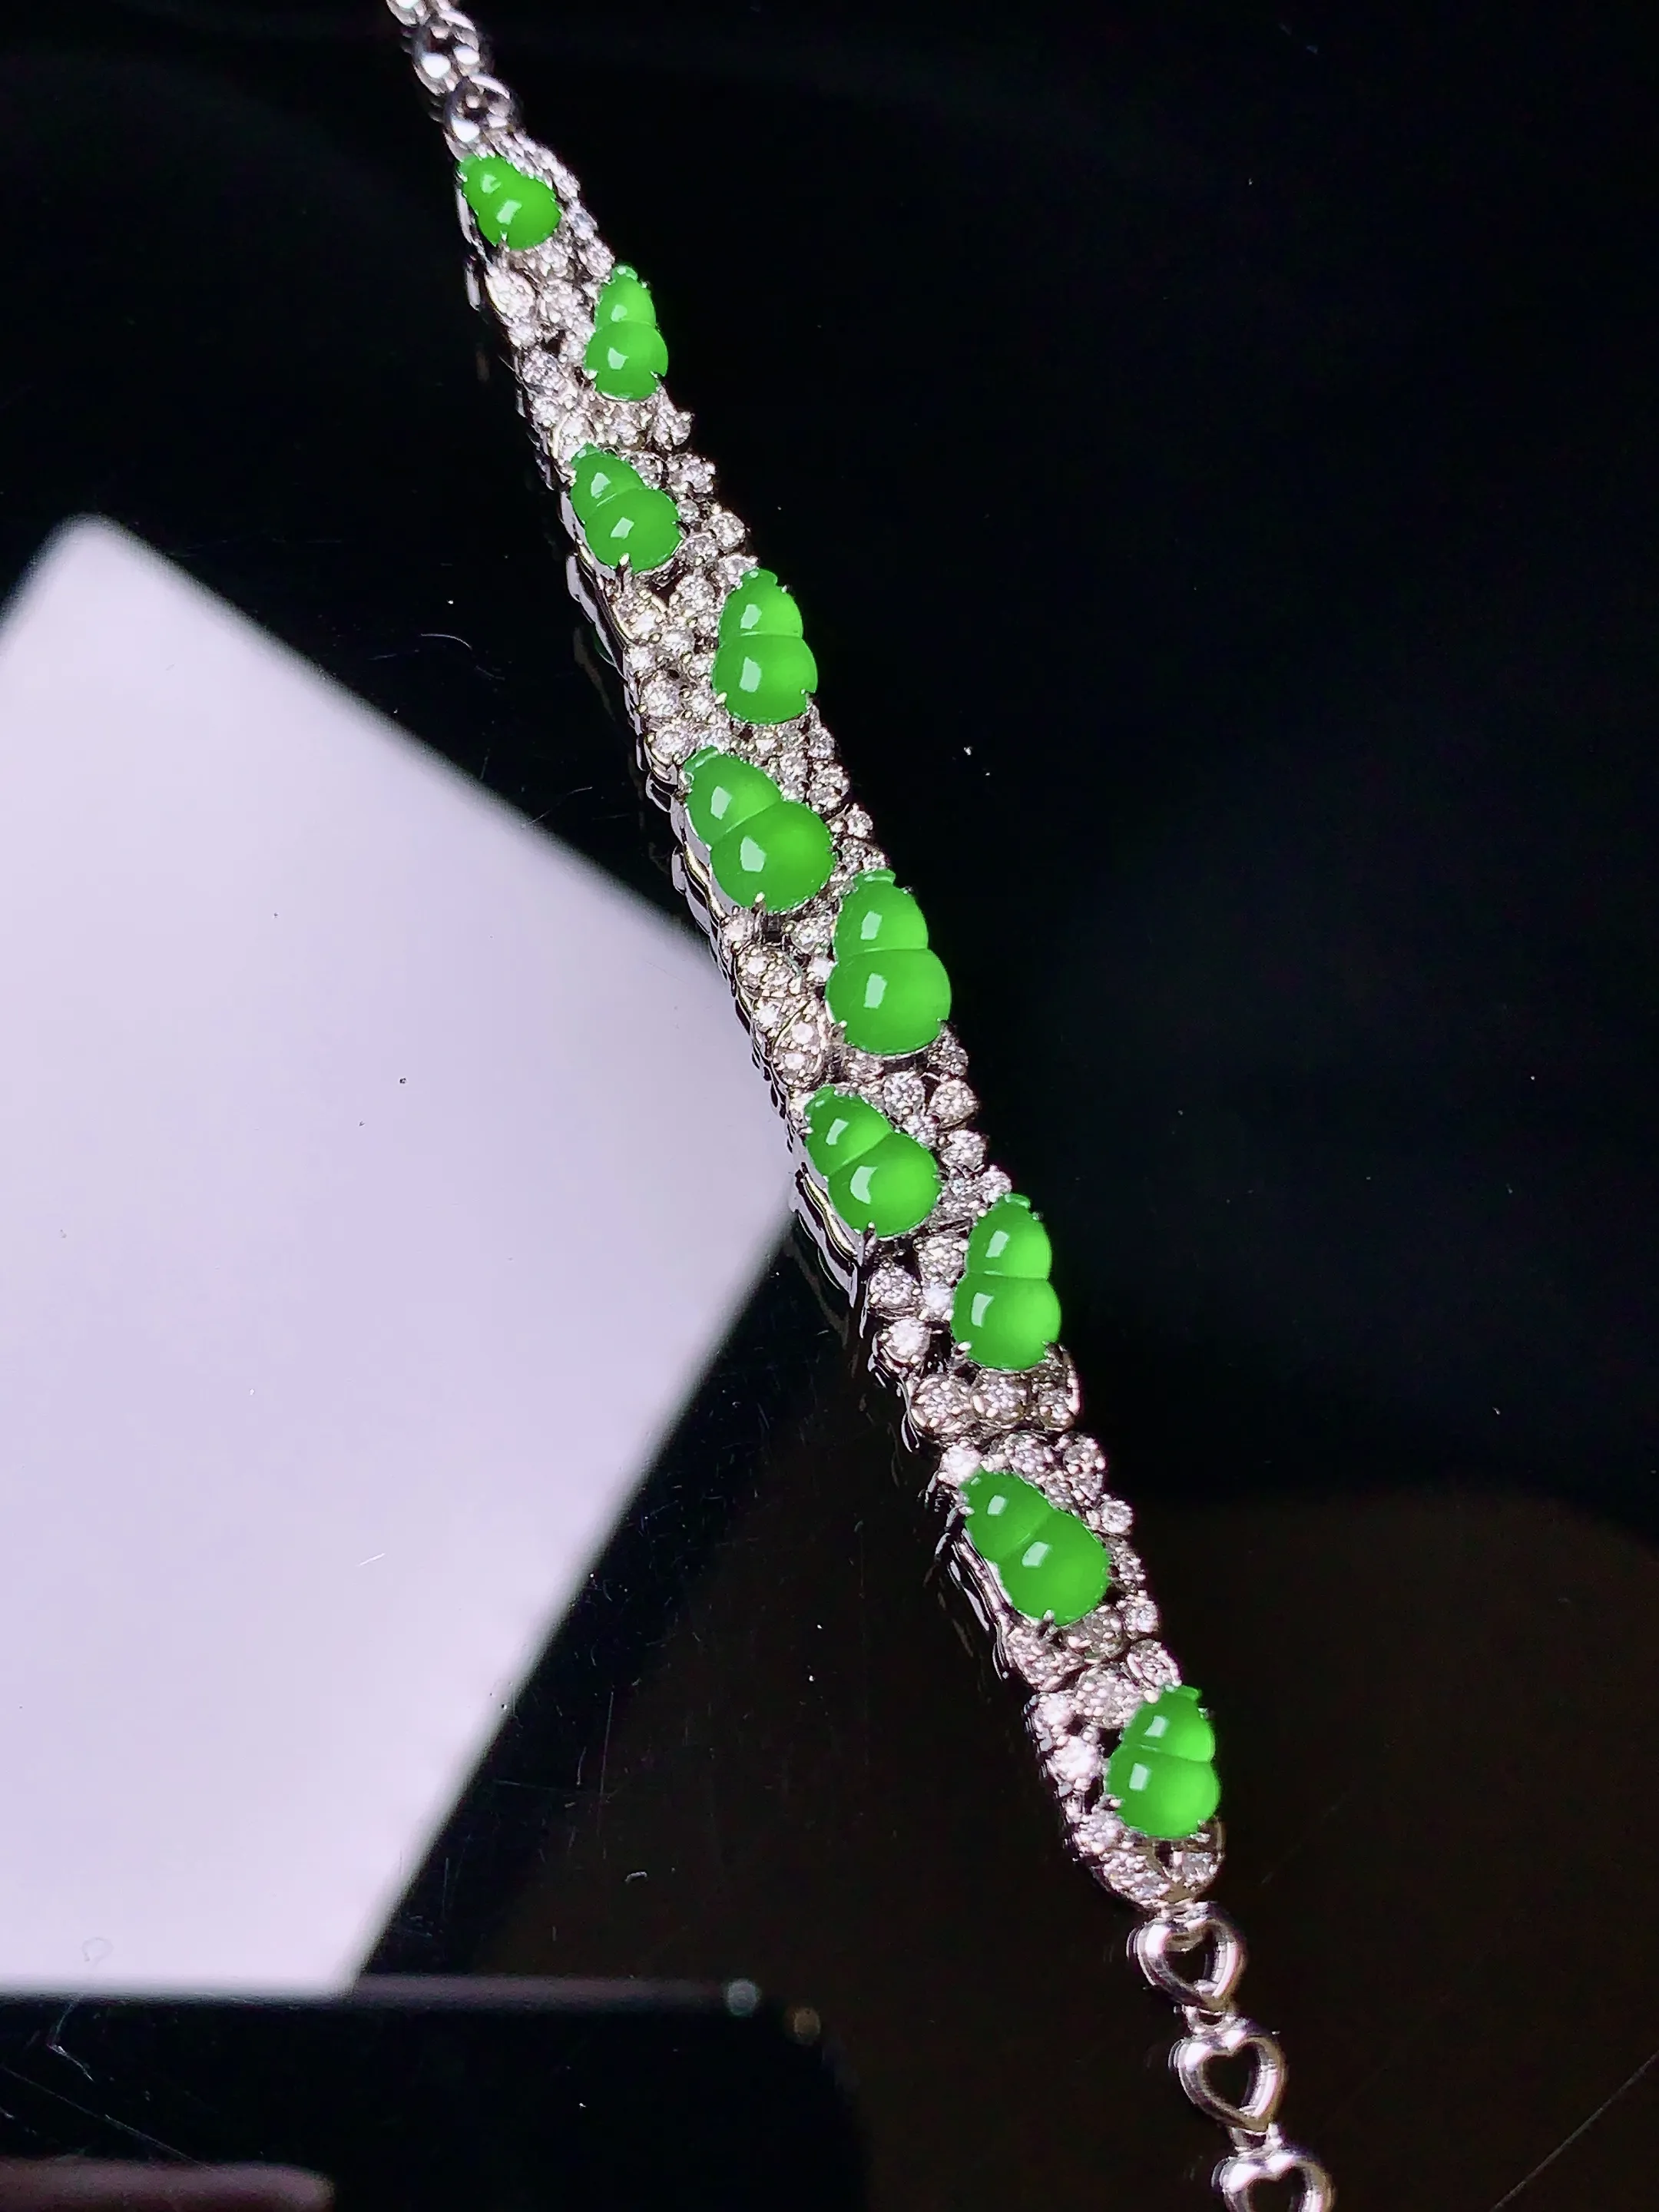 18K金钻镶嵌满绿葫芦手链 玉质细腻 色泽清新艳丽 款式新颖时尚精美 亮眼 整体尺寸75.5*7.3*5.8